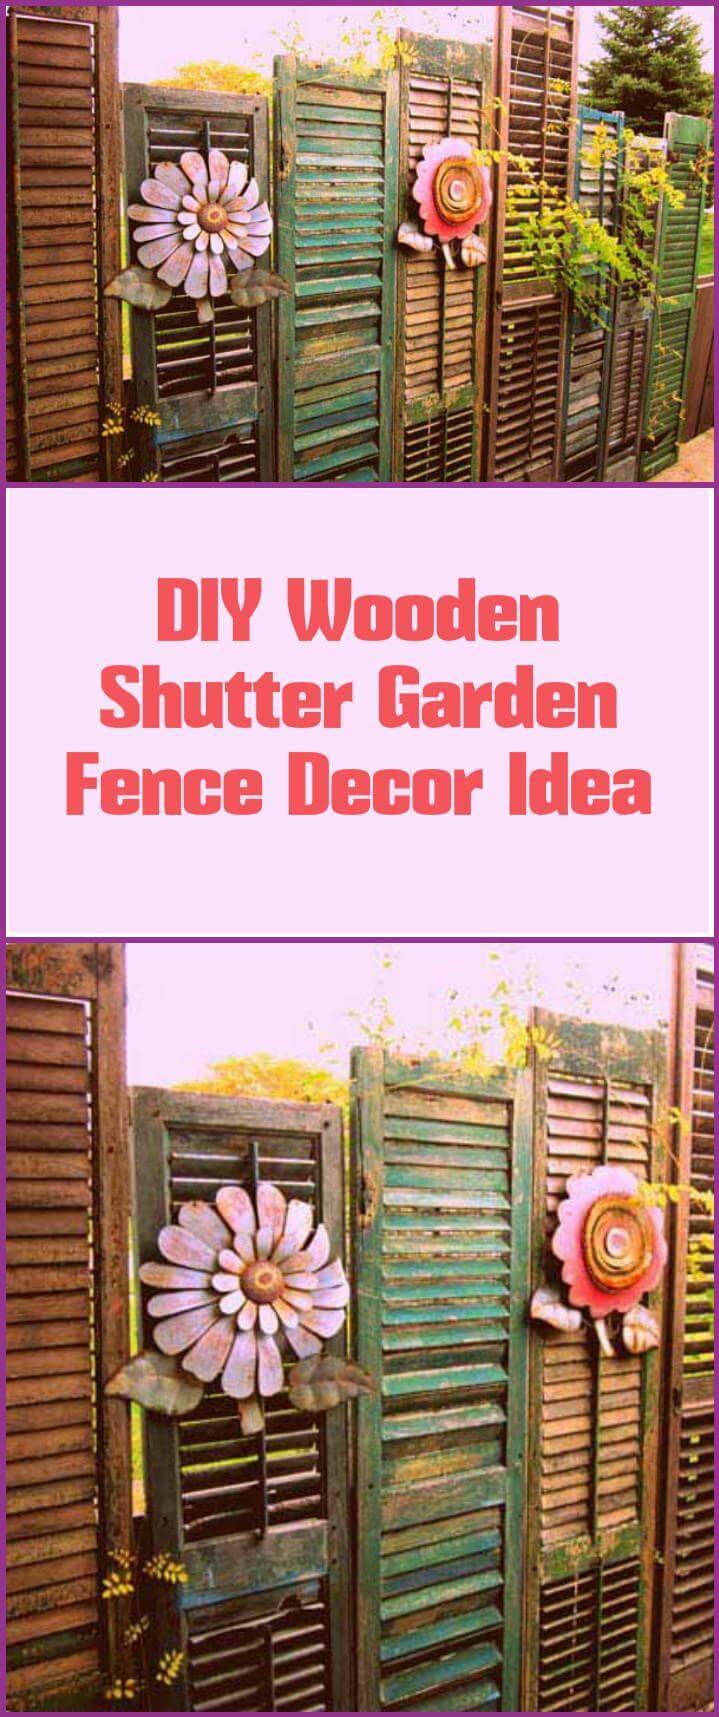 self-made wooden shutter garden fence decor